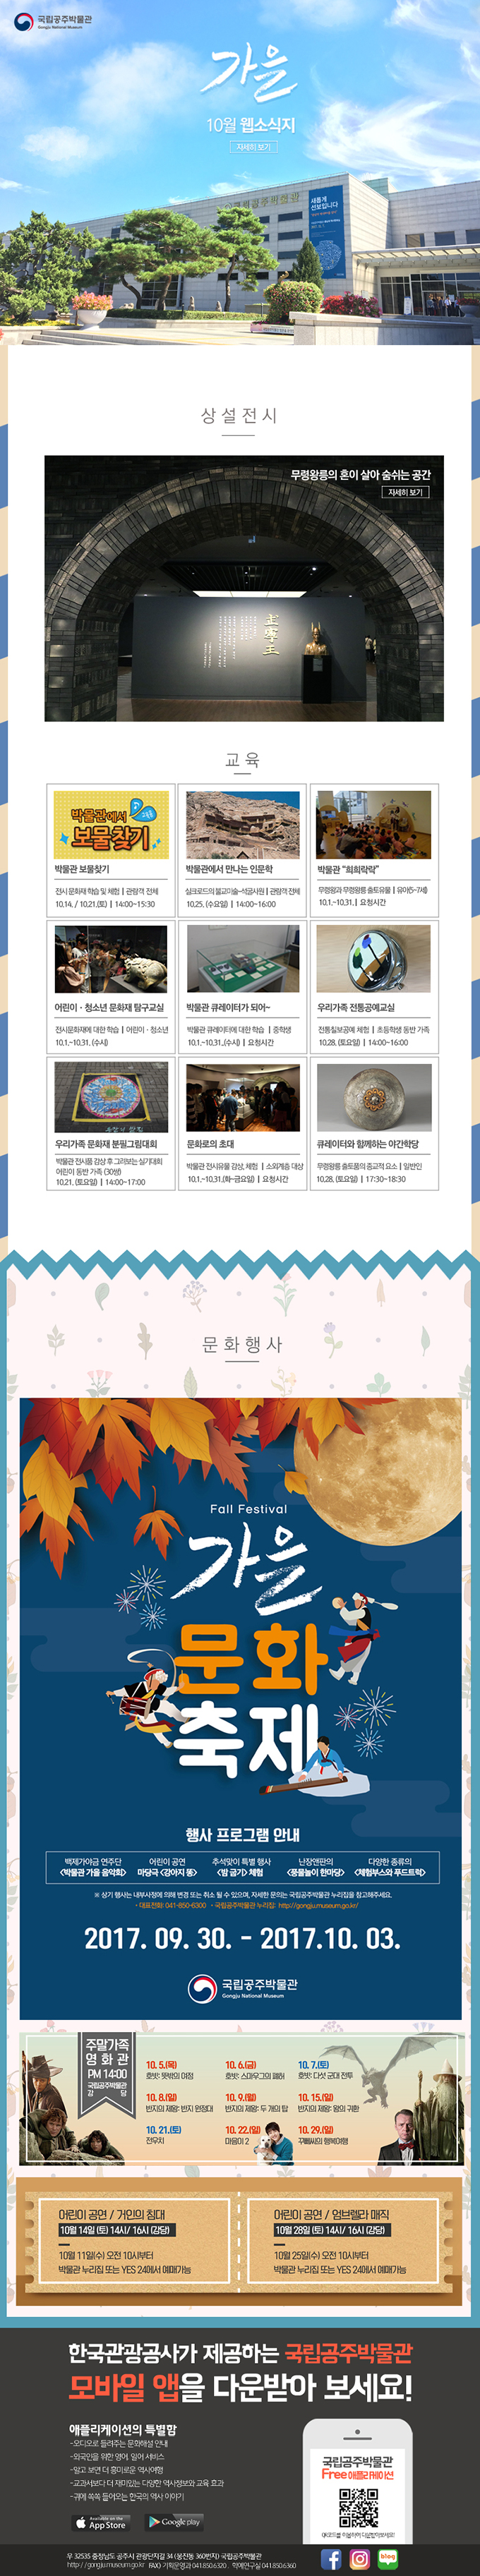 국립공주박물관 웹소식지 2017년 10월 대표이미지